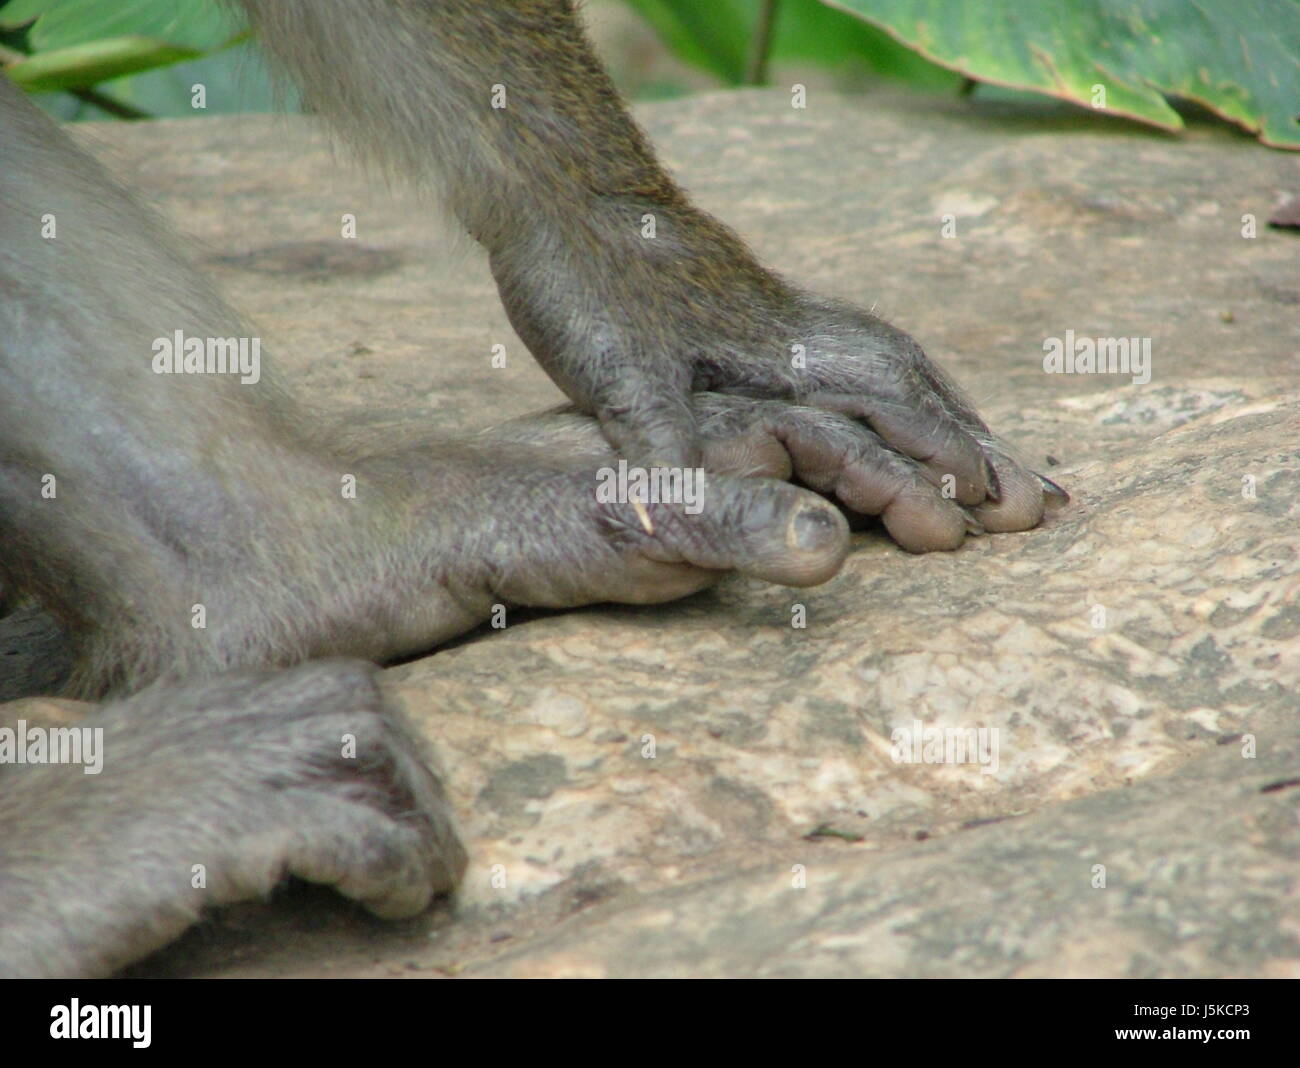 Mani mano pietra dito animale mammifero monkey piedi le dita dei piedi punta Tailandia scimmie Foto Stock